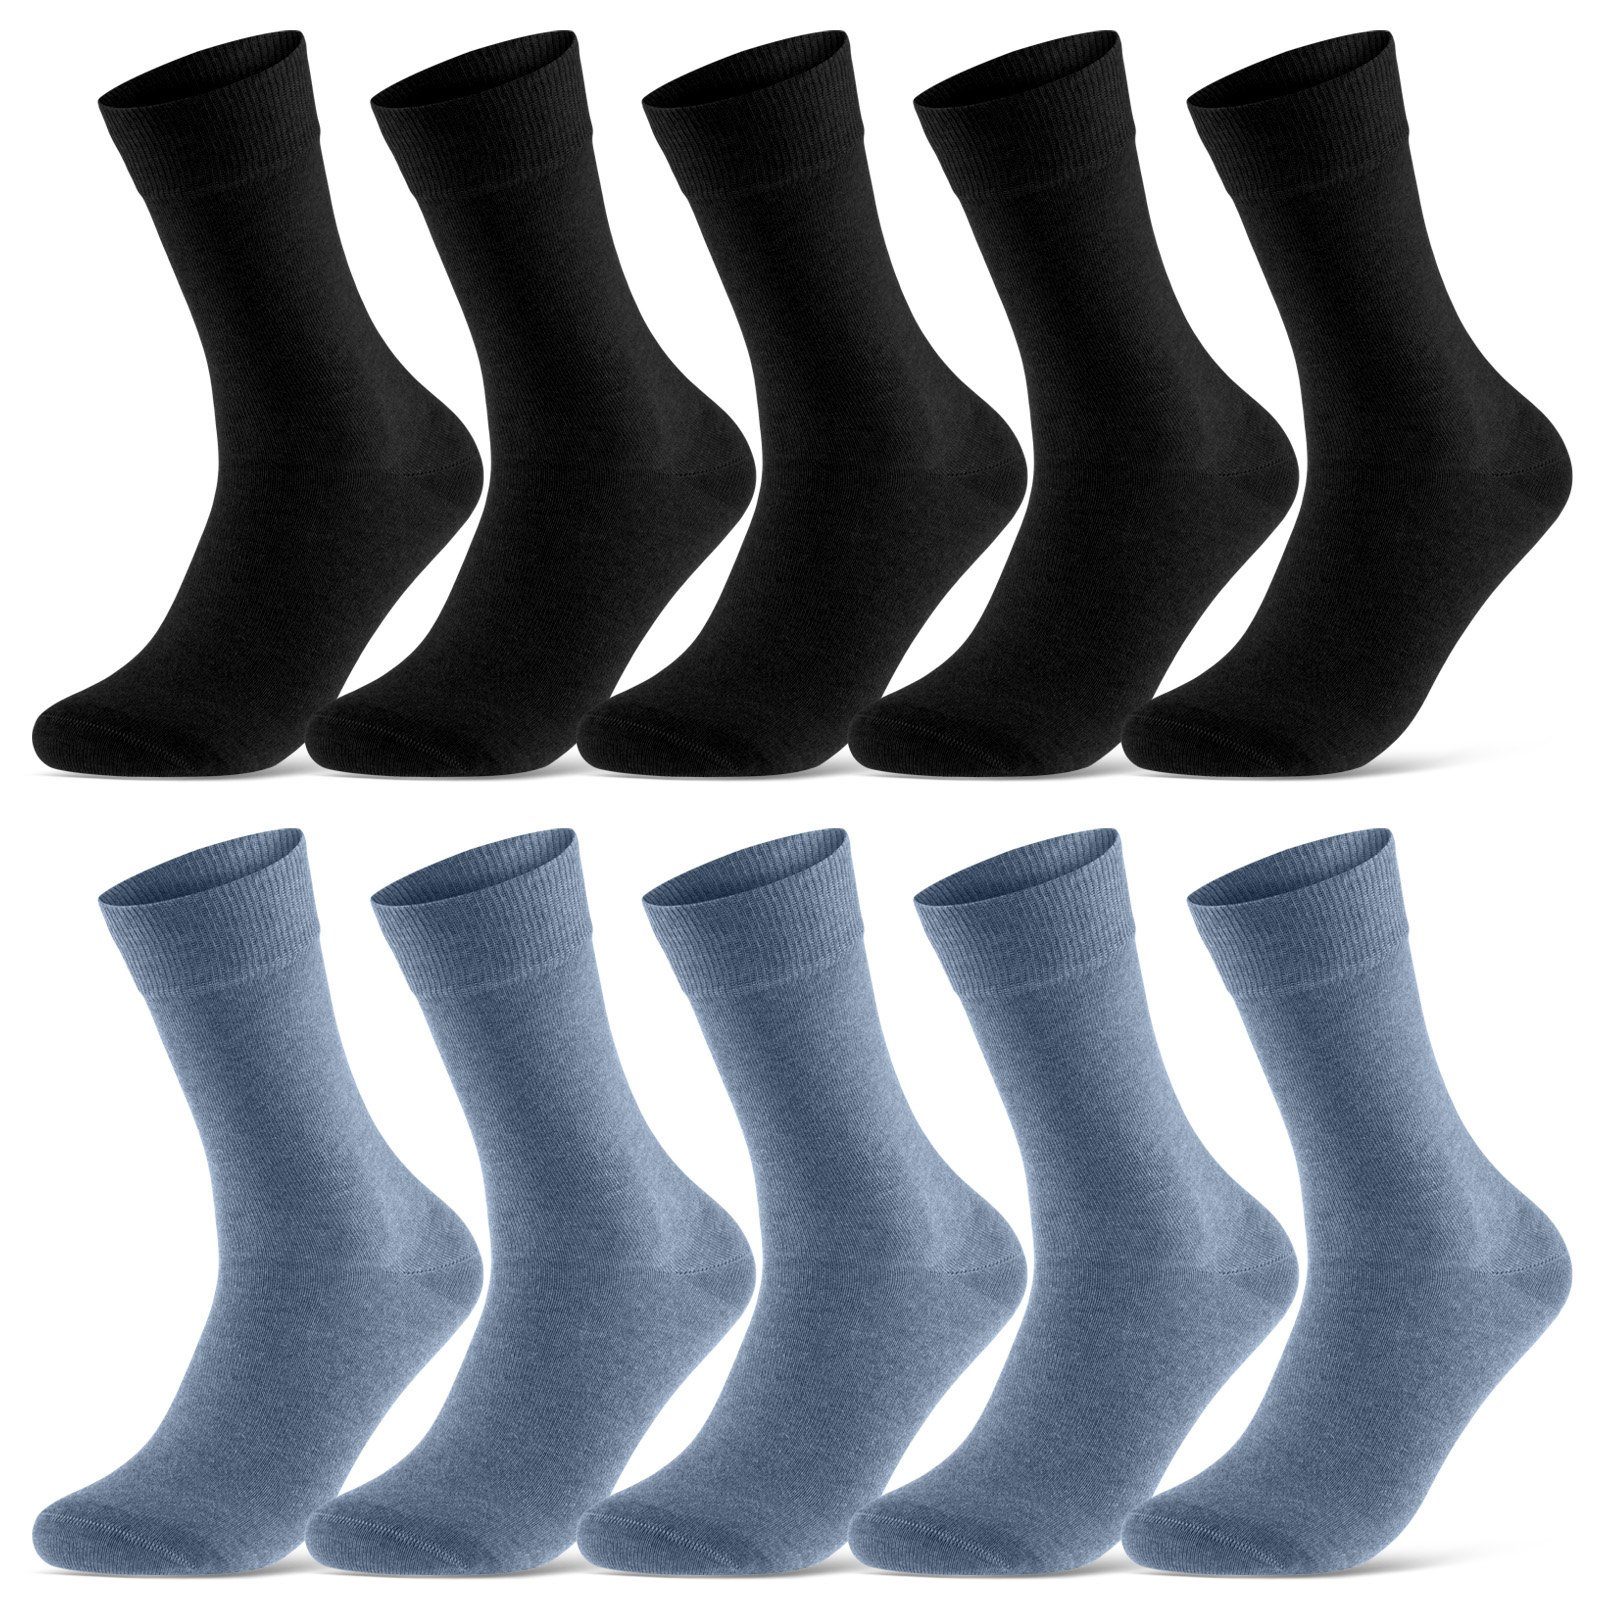 sockenkauf24 Socken 10 Paar Damen & Herren Socken Business Socken Baumwolle (Schwarz/Jeans, 39-42) mit Komfortbund (Basicline) - 70201T